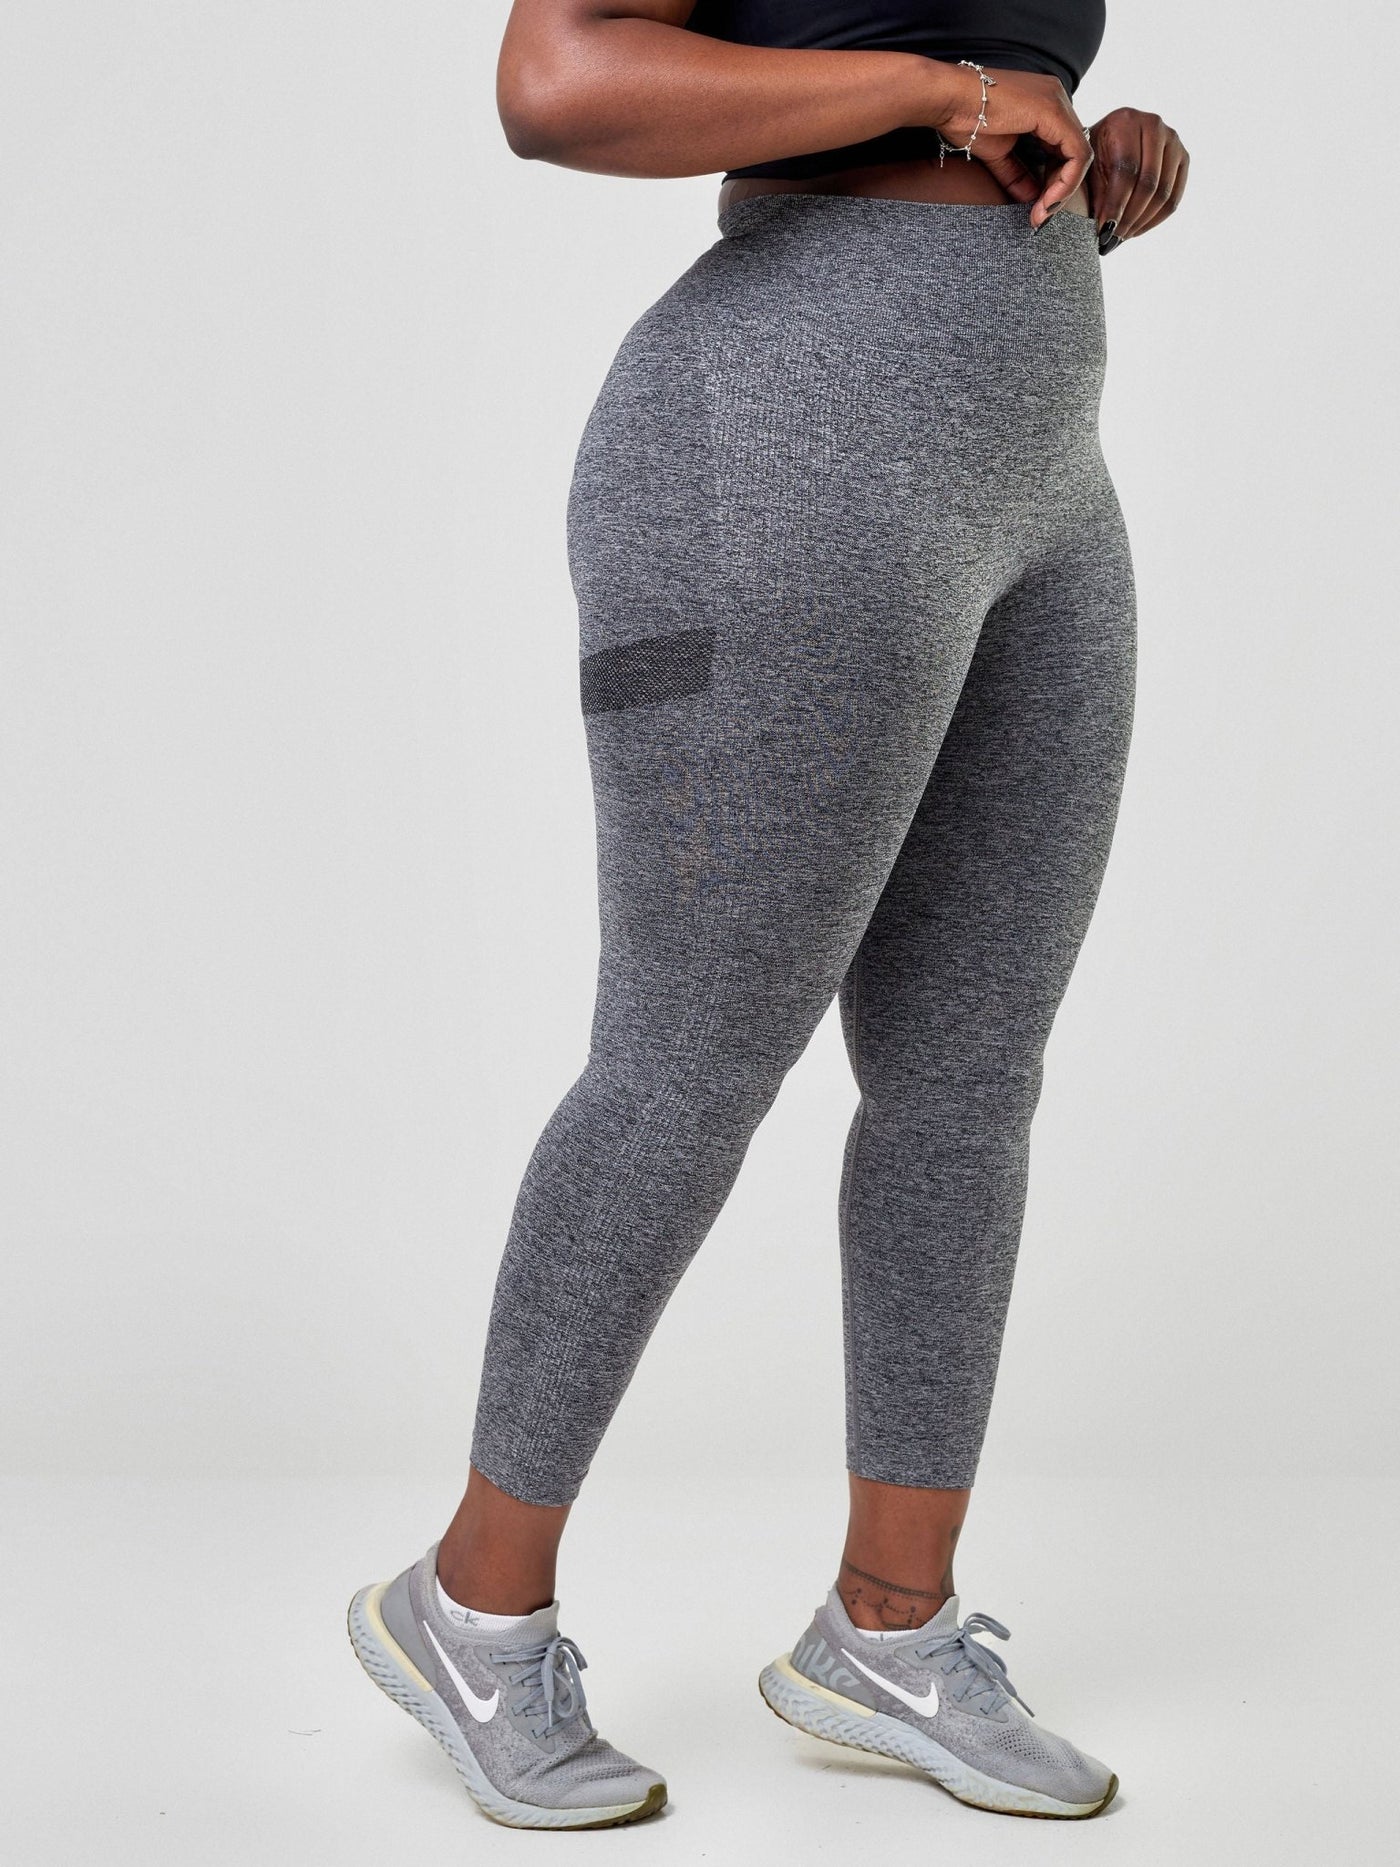 Ava Fitness Stay Active Leggings - Dark Grey - Shopzetu